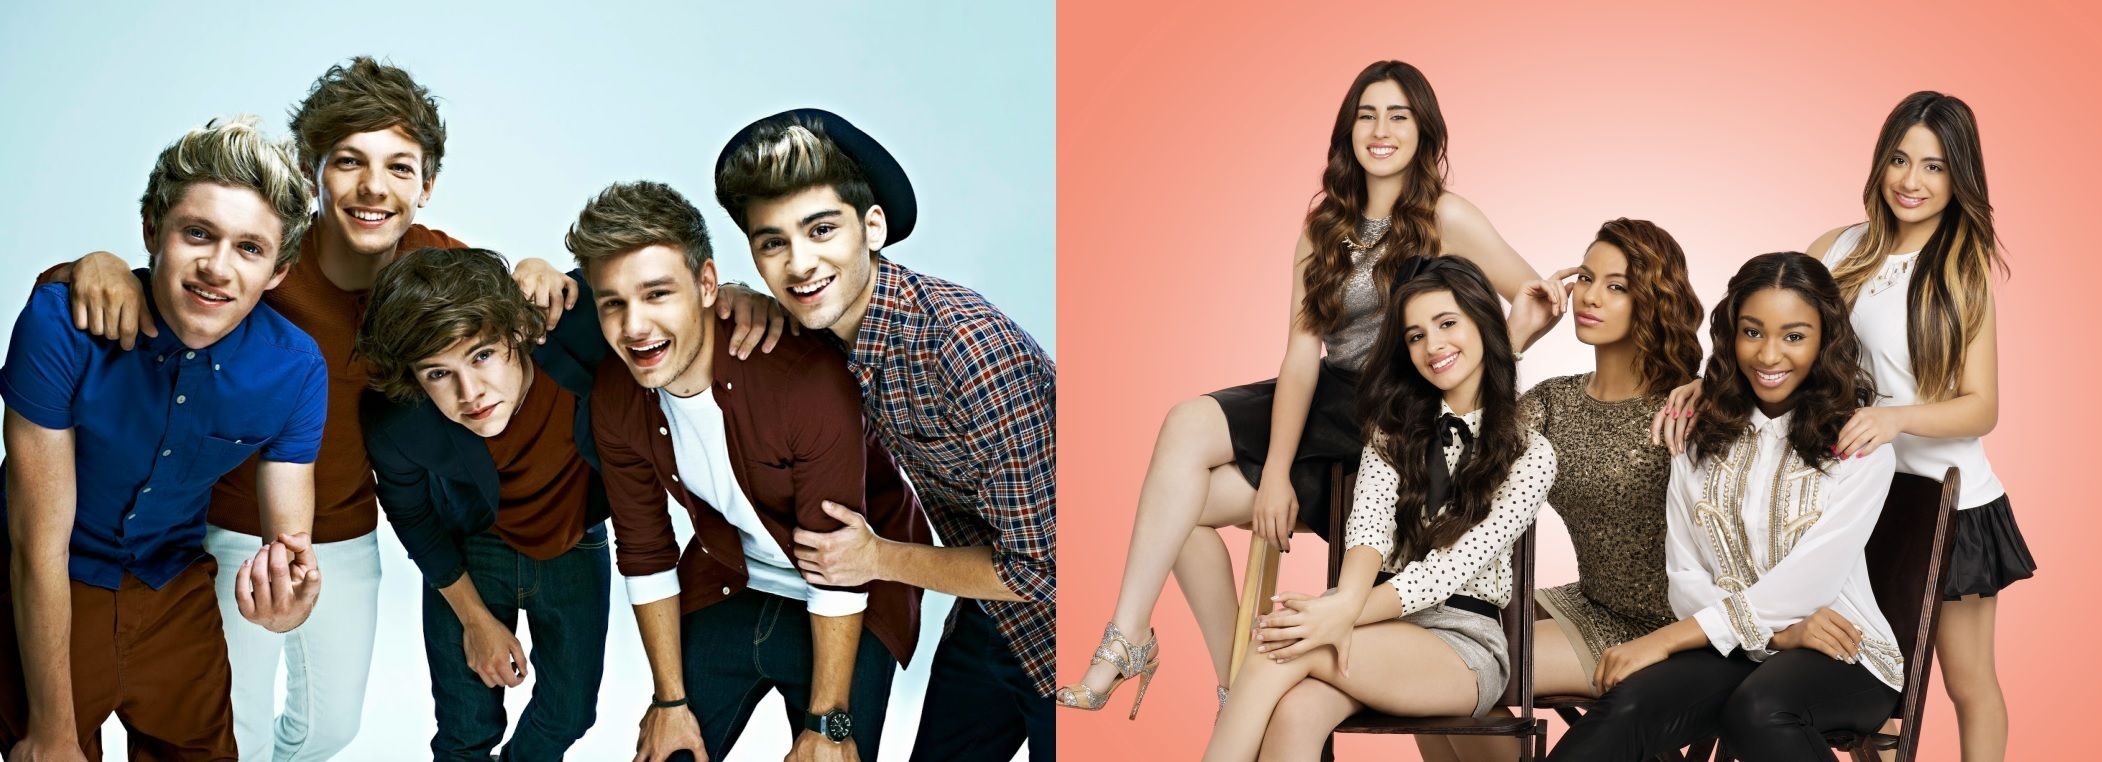 As bandas One Direction e Fifth Harmony foram formadas durante o programa, em suas versões britânica e americana, respectivamente (Divulgação).